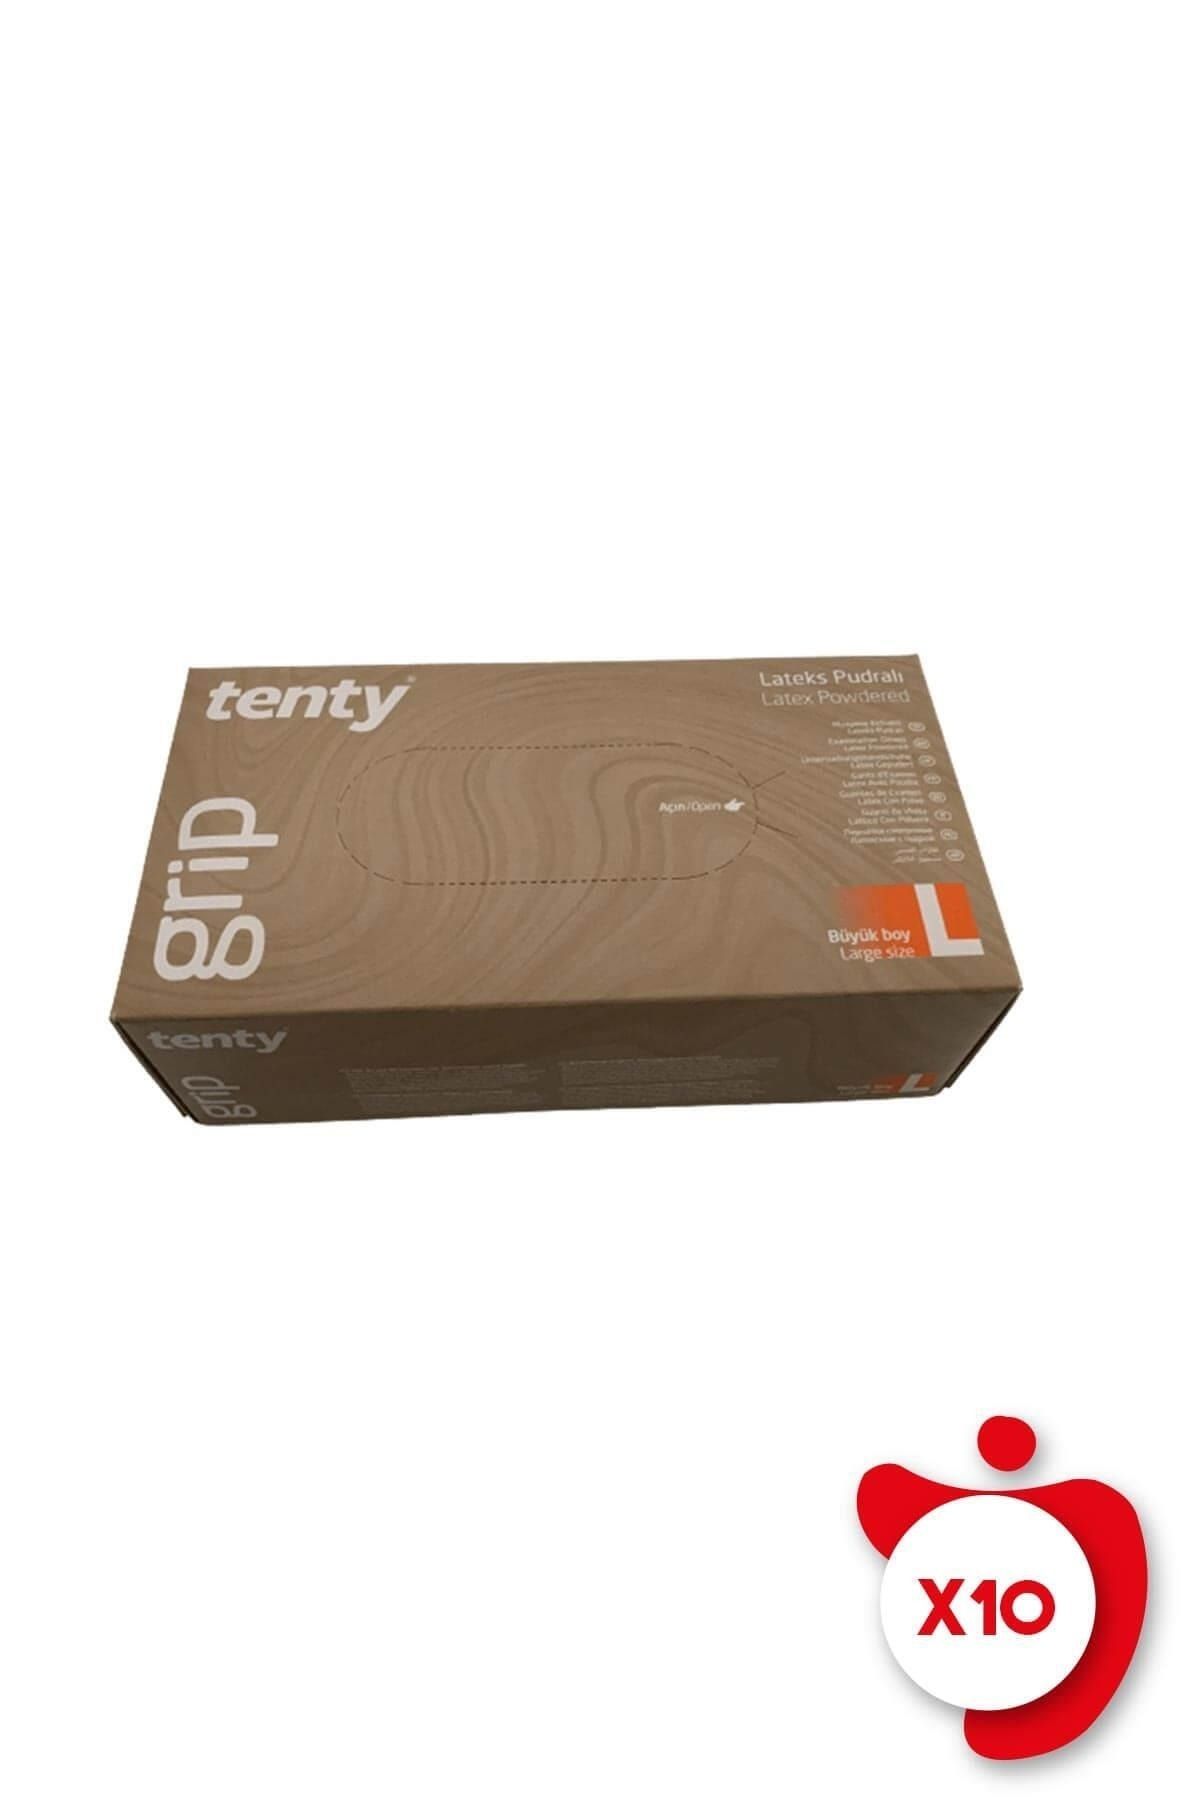 Tenty Grip Pudralı Lateks Muayene Eldiveni L Beden Beyaz 100'lü 10 Paket